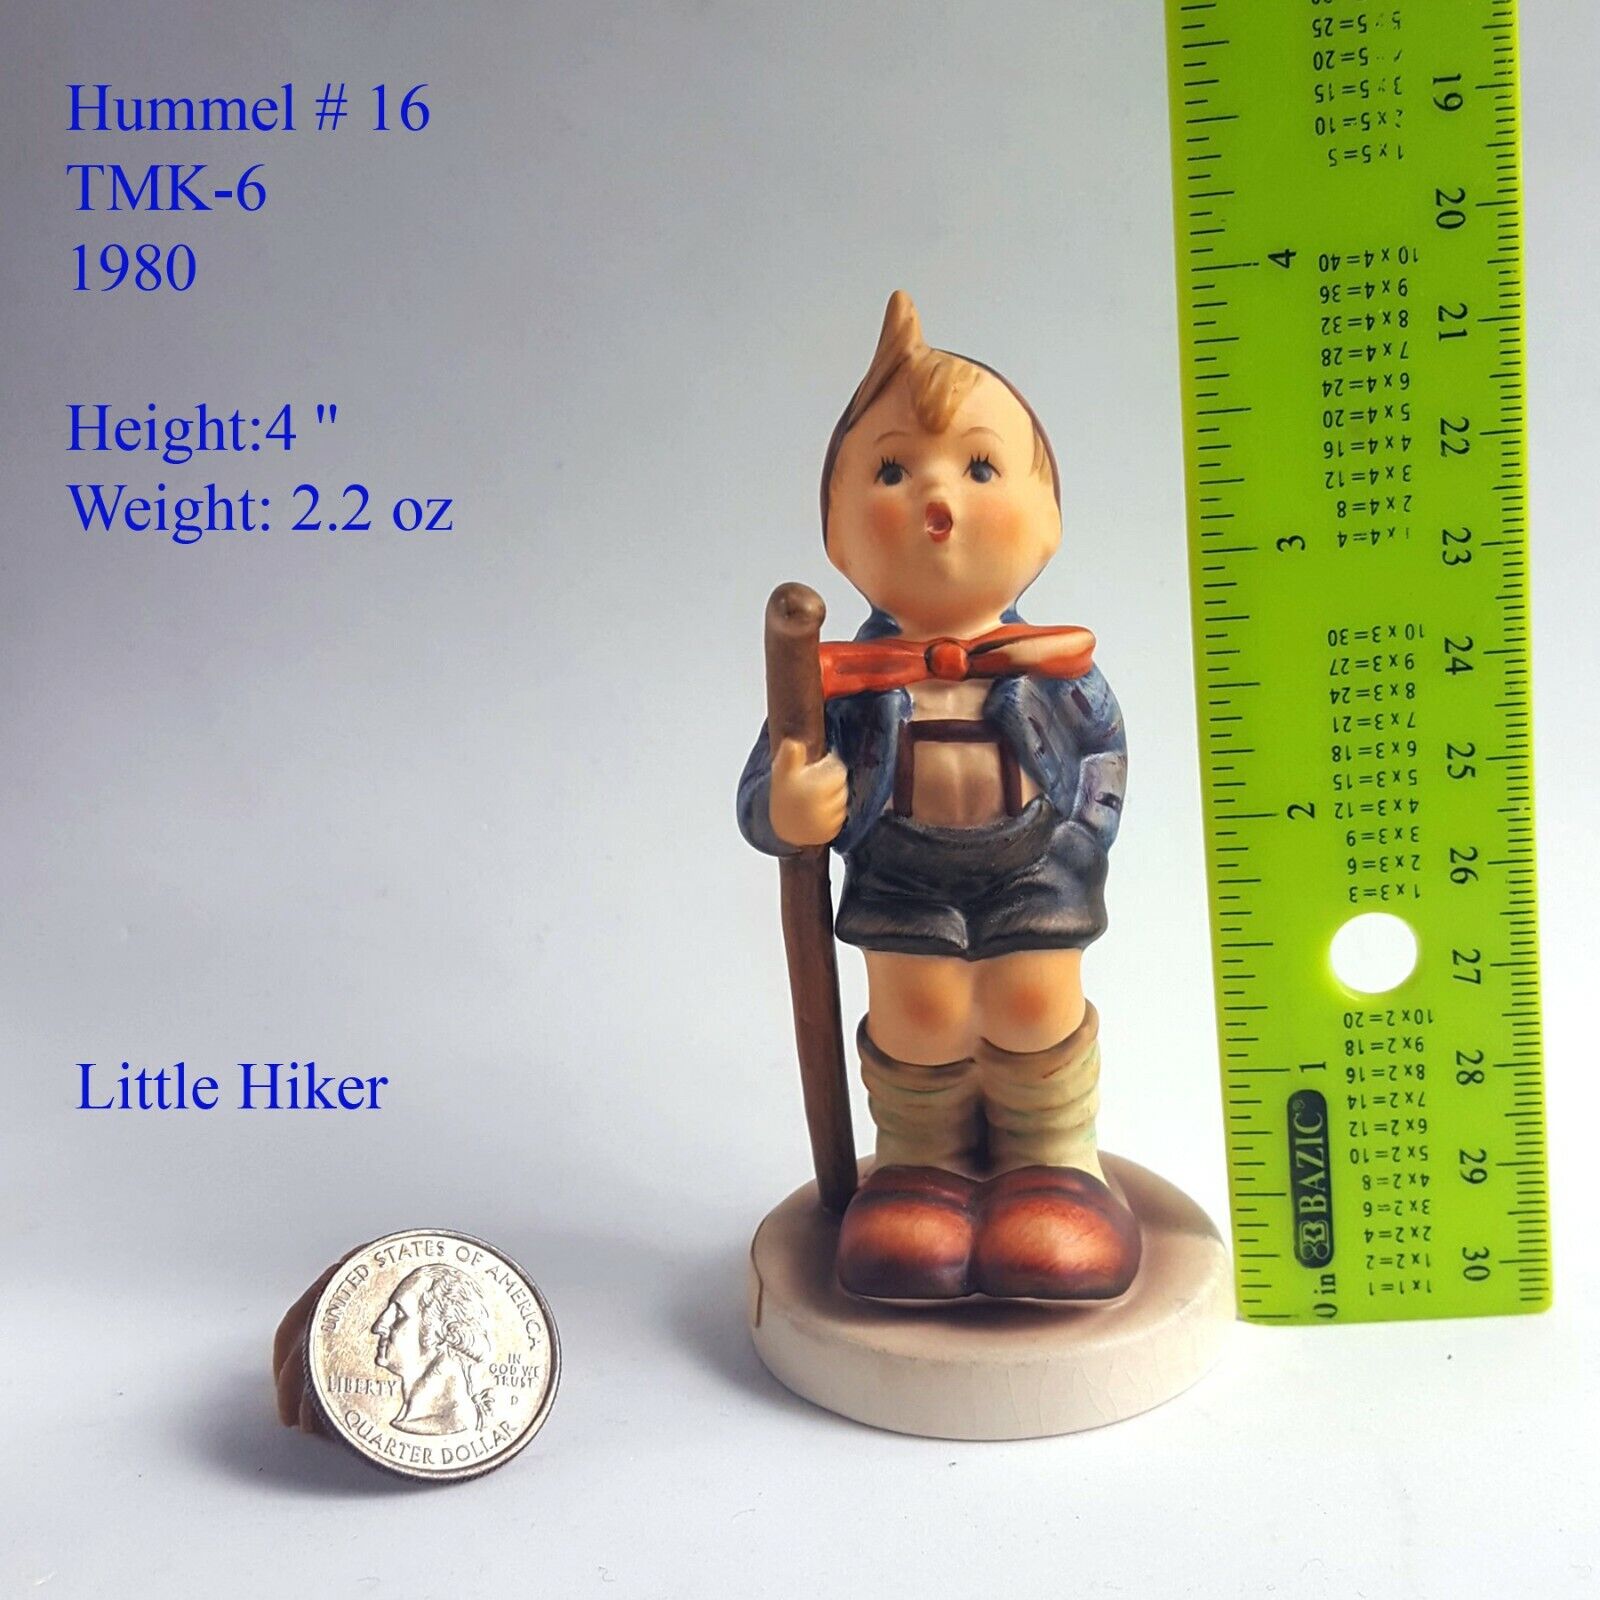 Genuine Vintage Goebel Hummel Figurine Little Hiker 1980 TMK-6 Hummel #16  